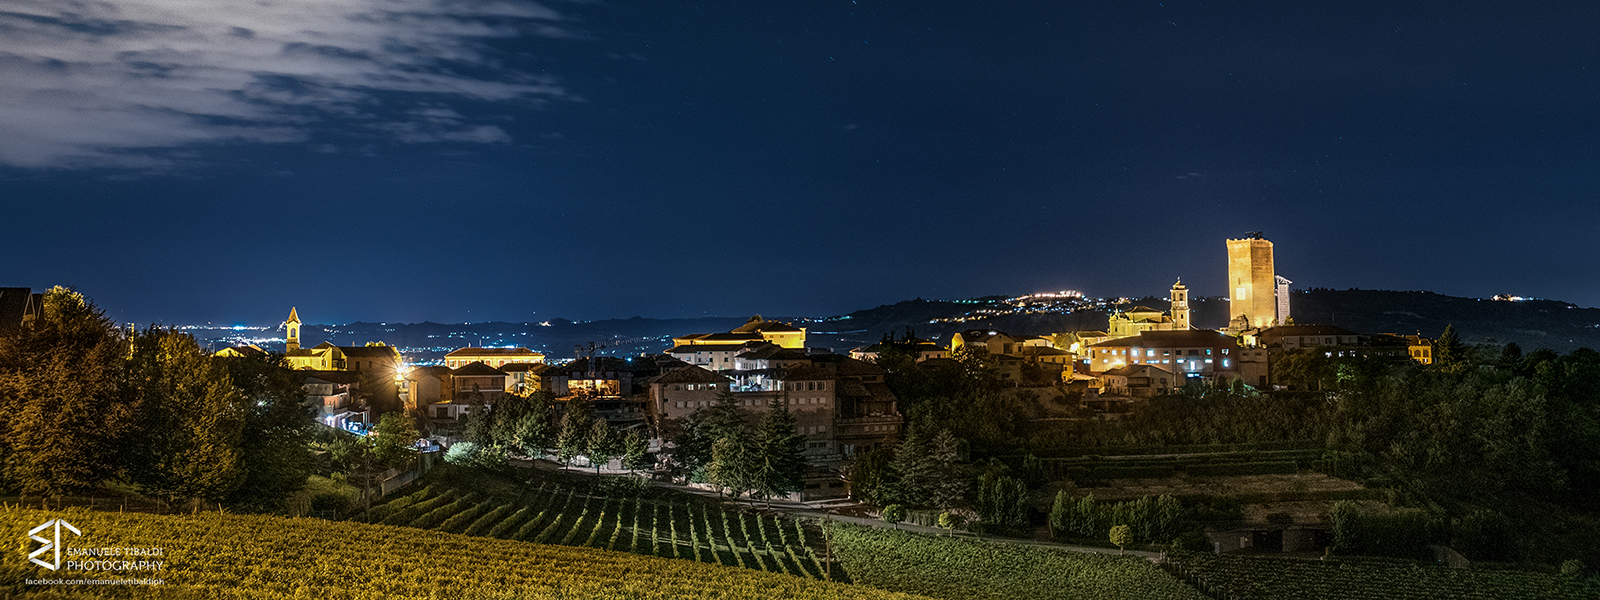 Barbaresco (Cuneo) notturna